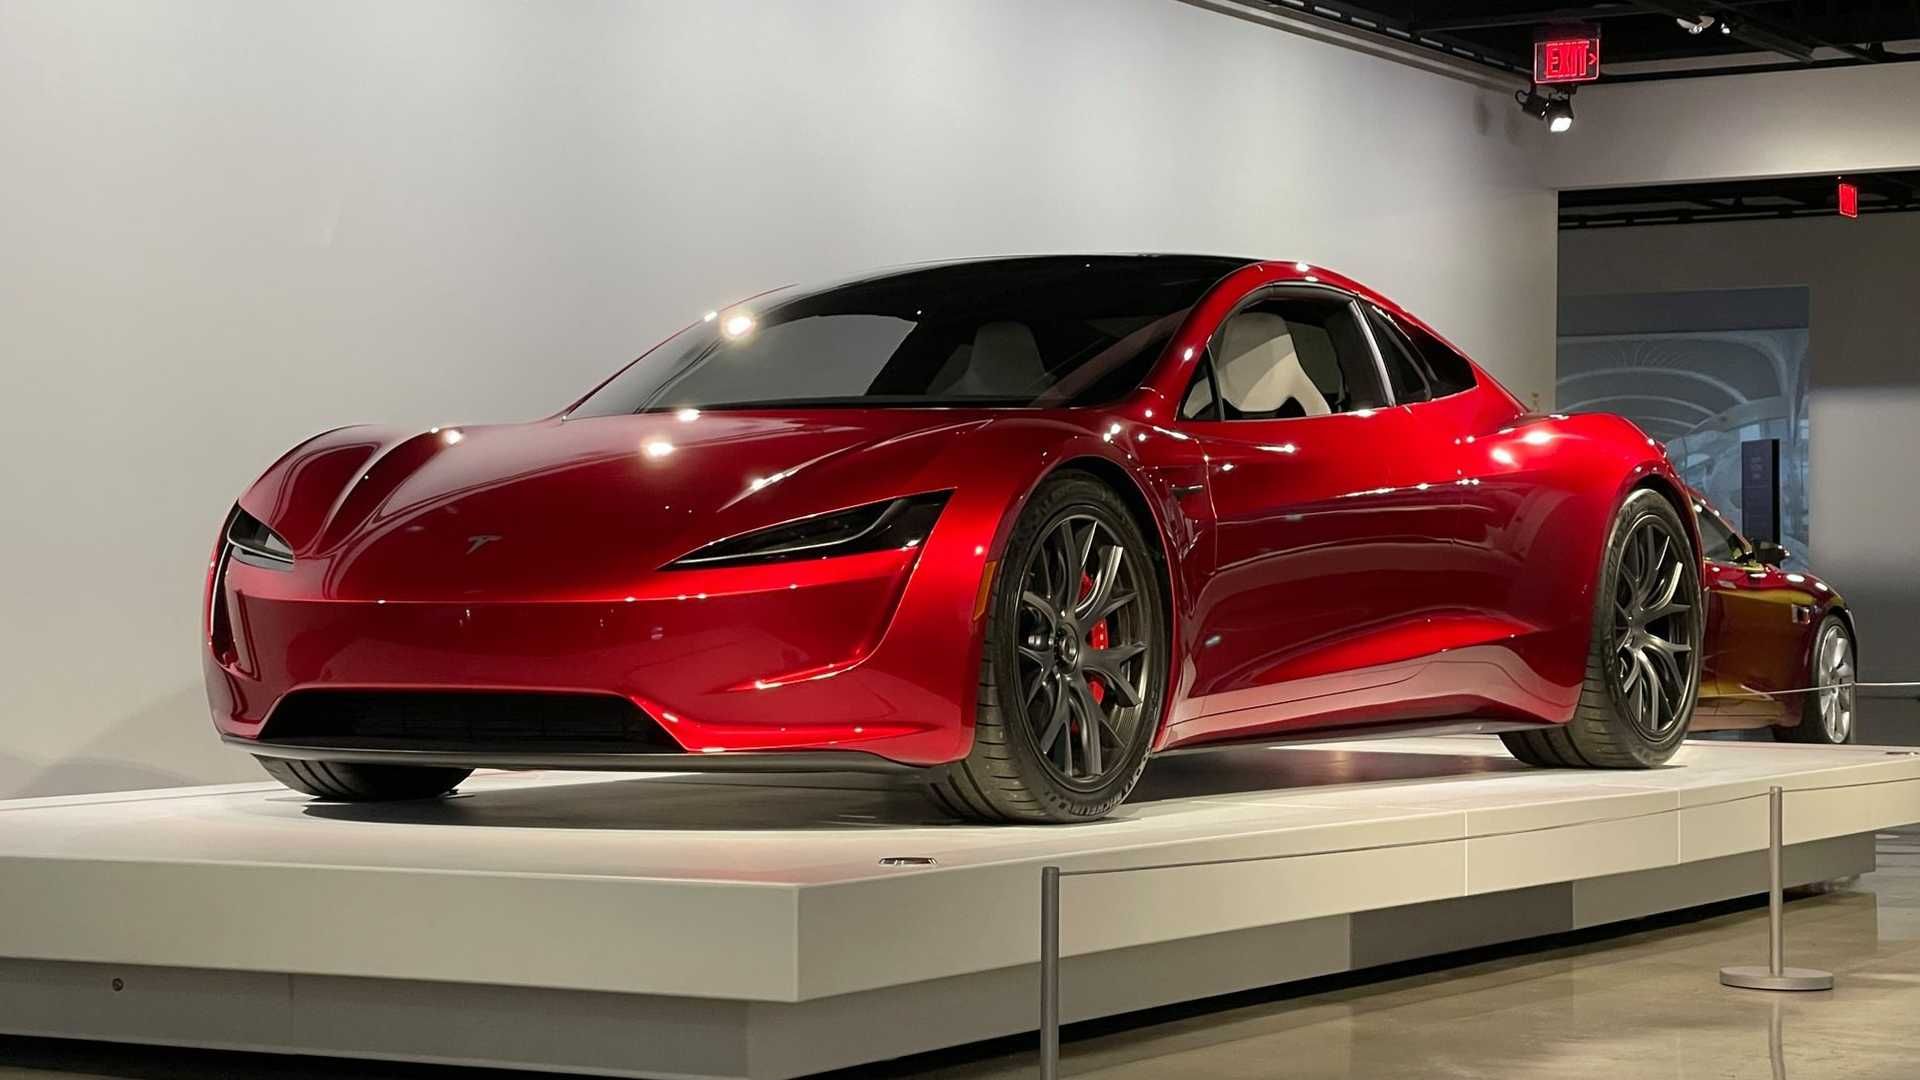 خودروی الکتریکی تسلا رودستر / Tesla Roadster قرمز رنگ در موزه پترسن